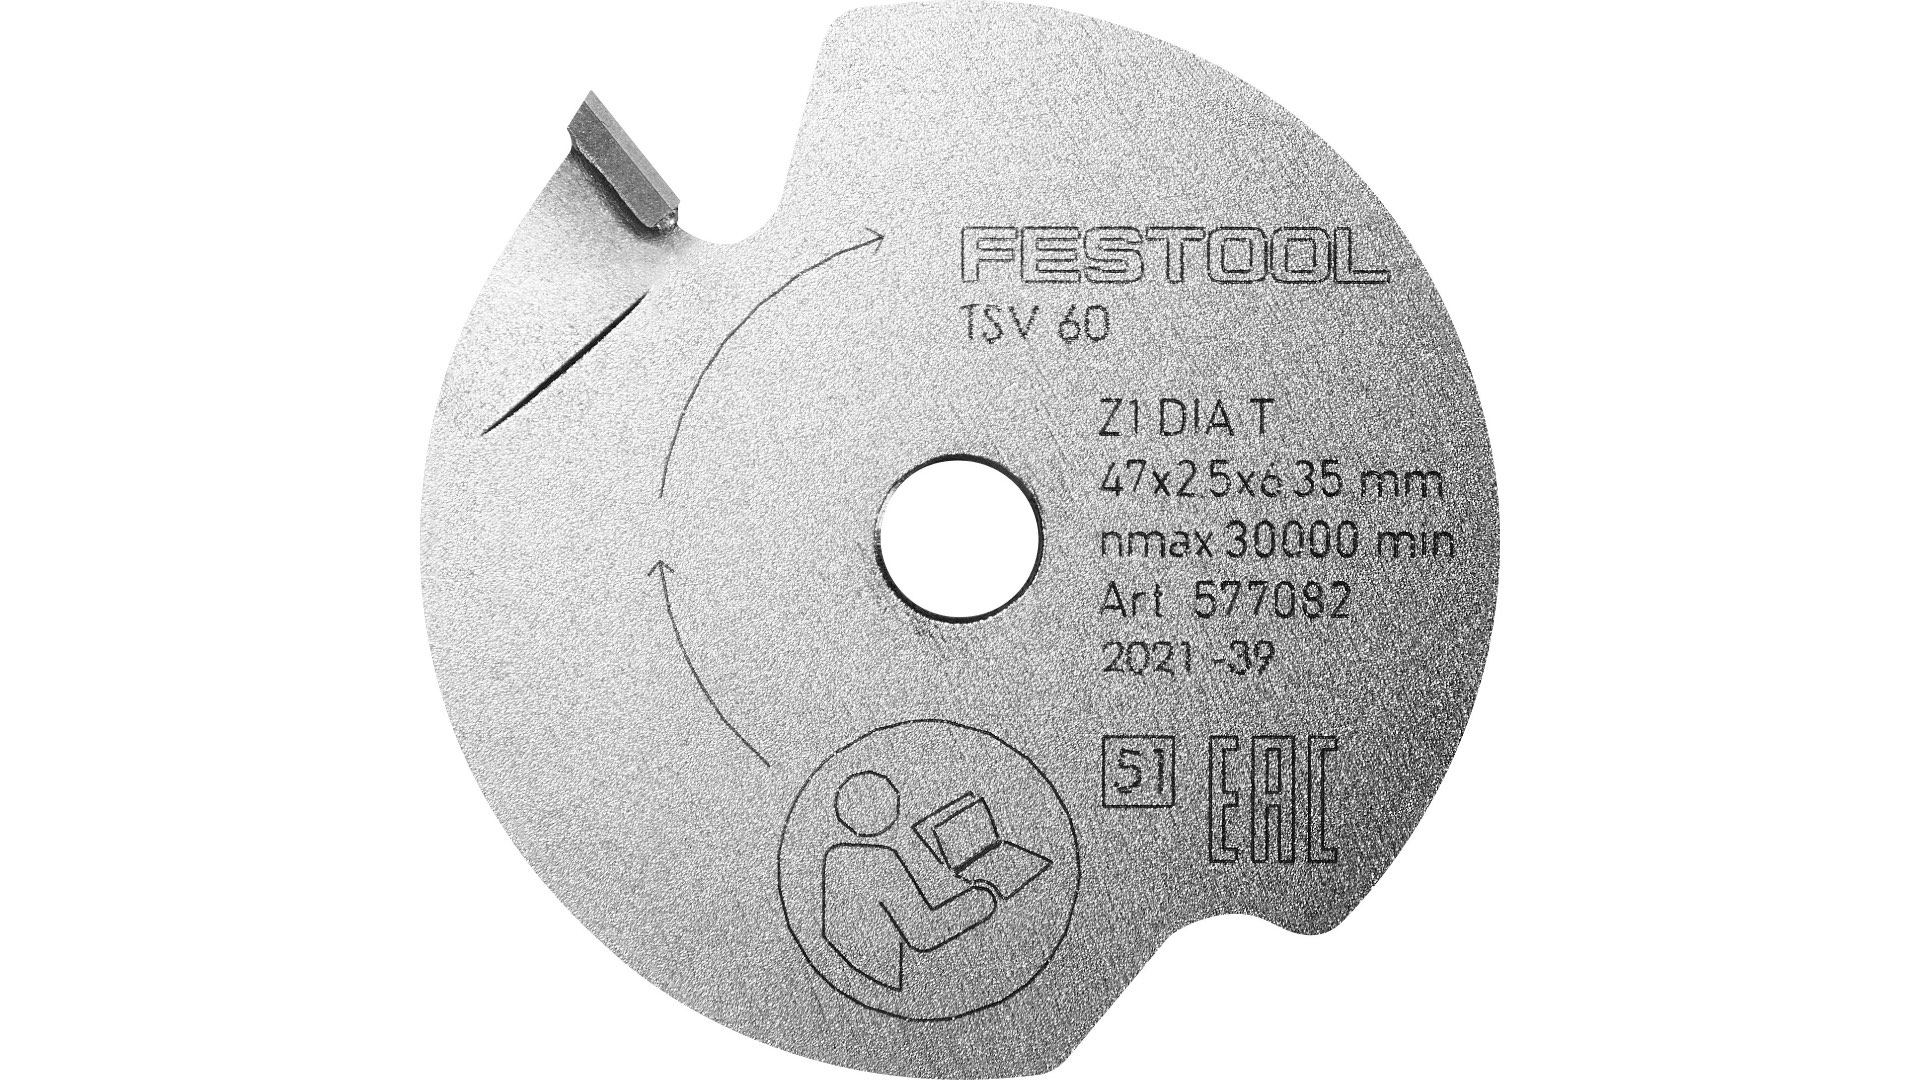 Пильный диск подрезной Festool DIA 47x2,5x6,35 T1 577082 подрезной составной пильный алмазный диск по лдсп и мдф rotis